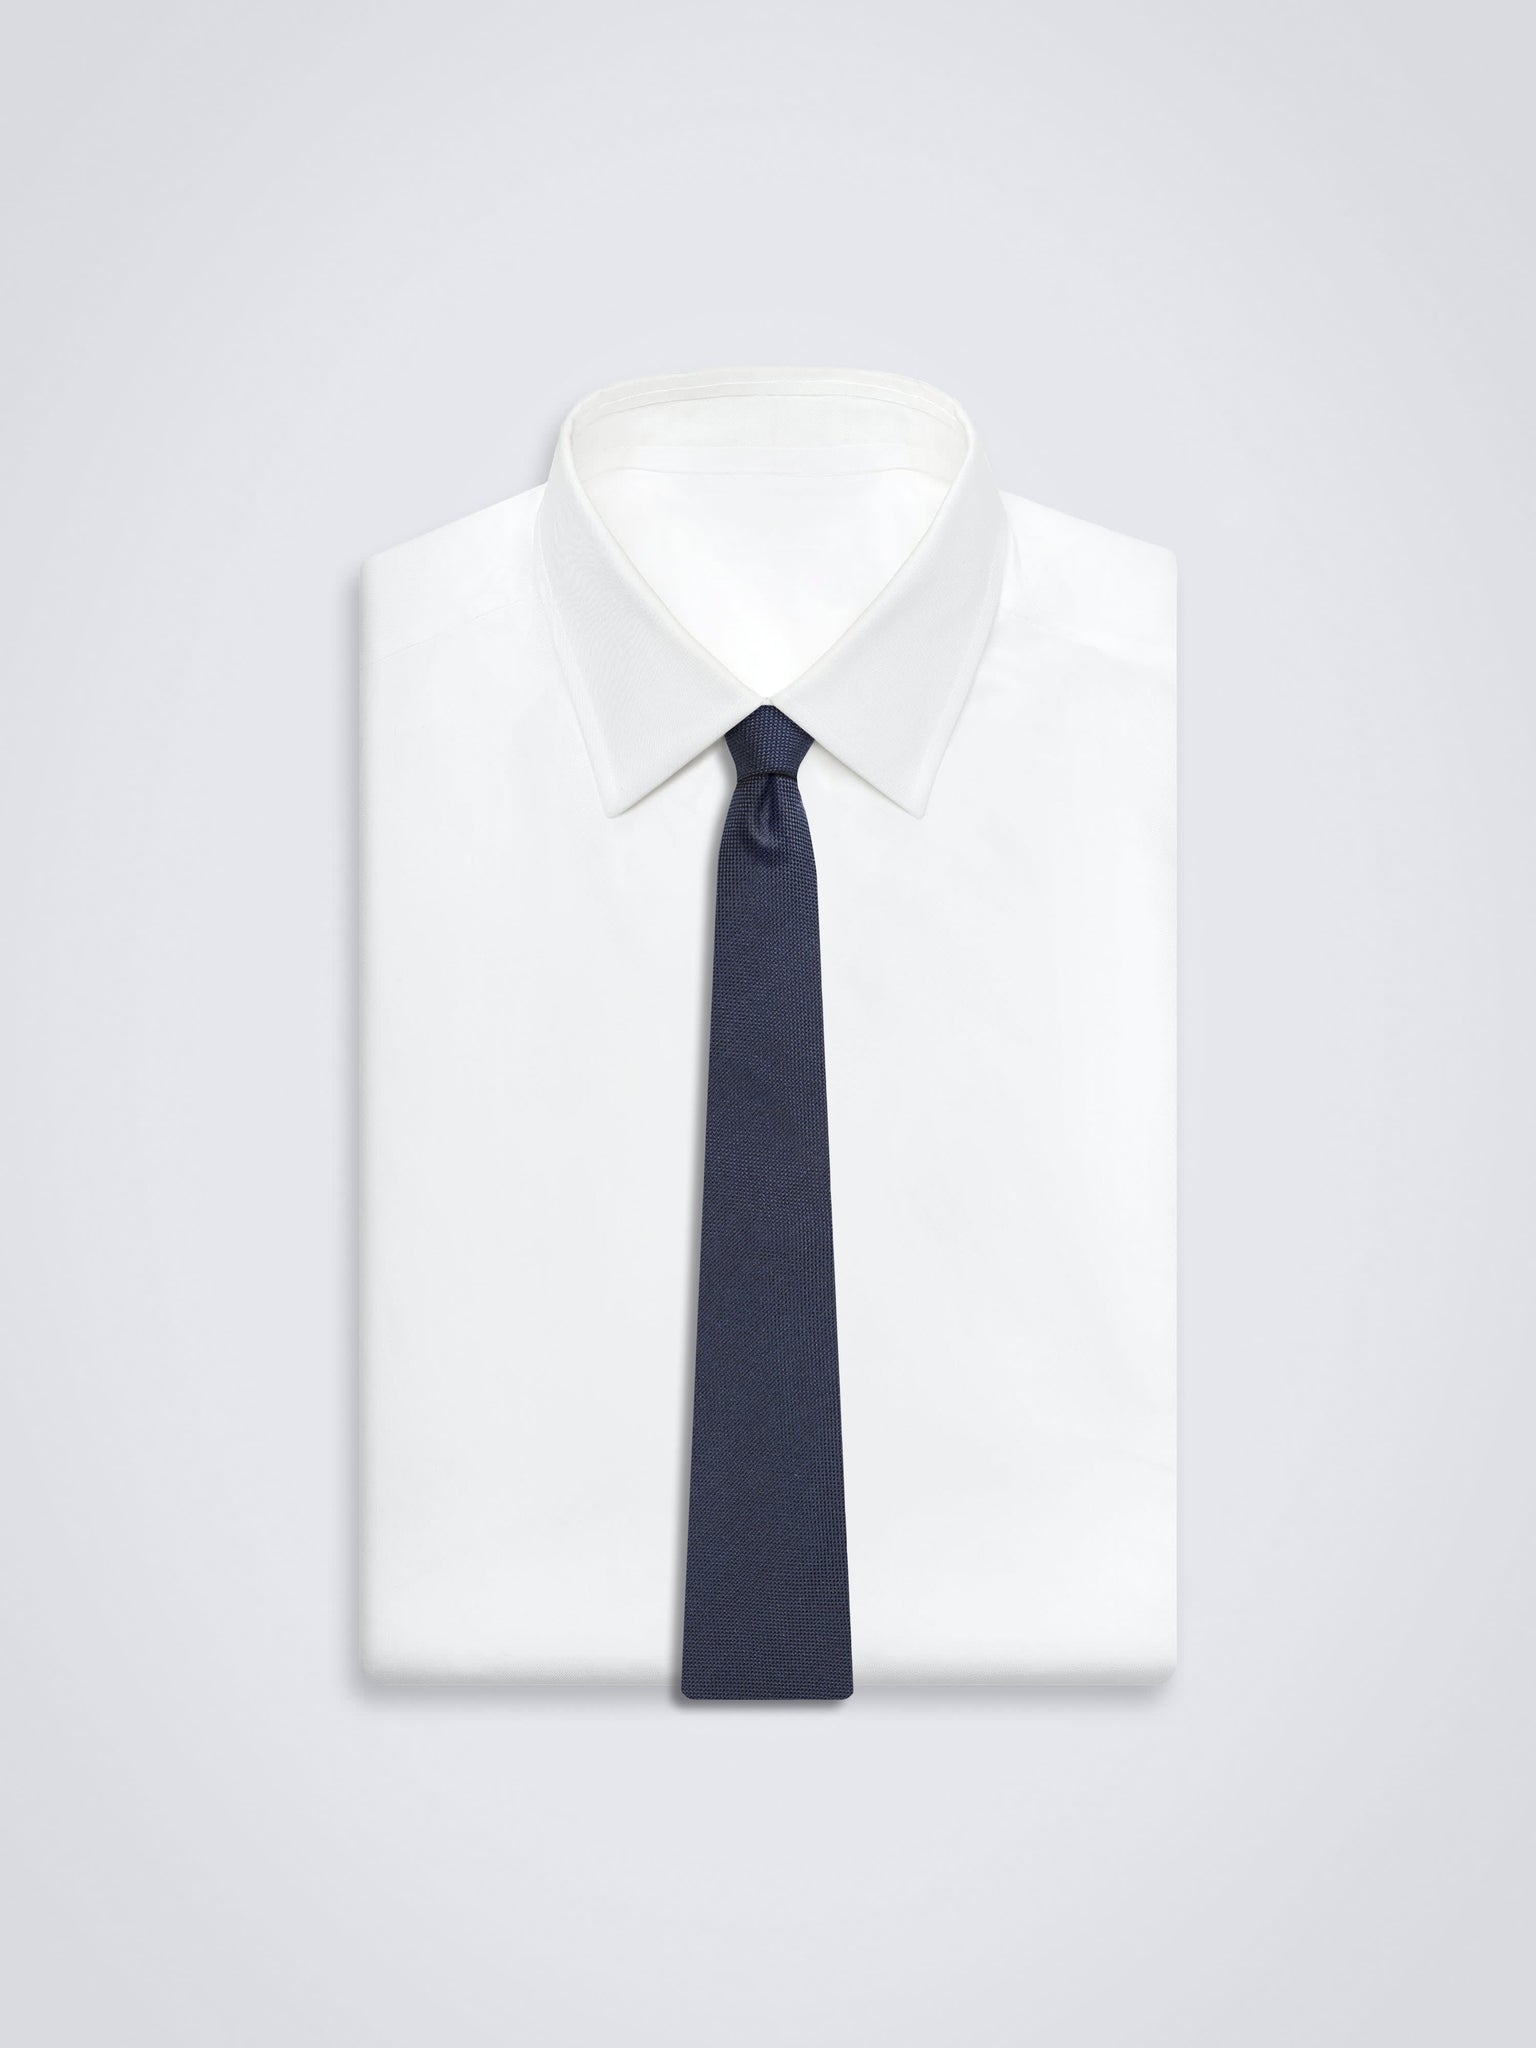 Chokore The Big Blue Necktie